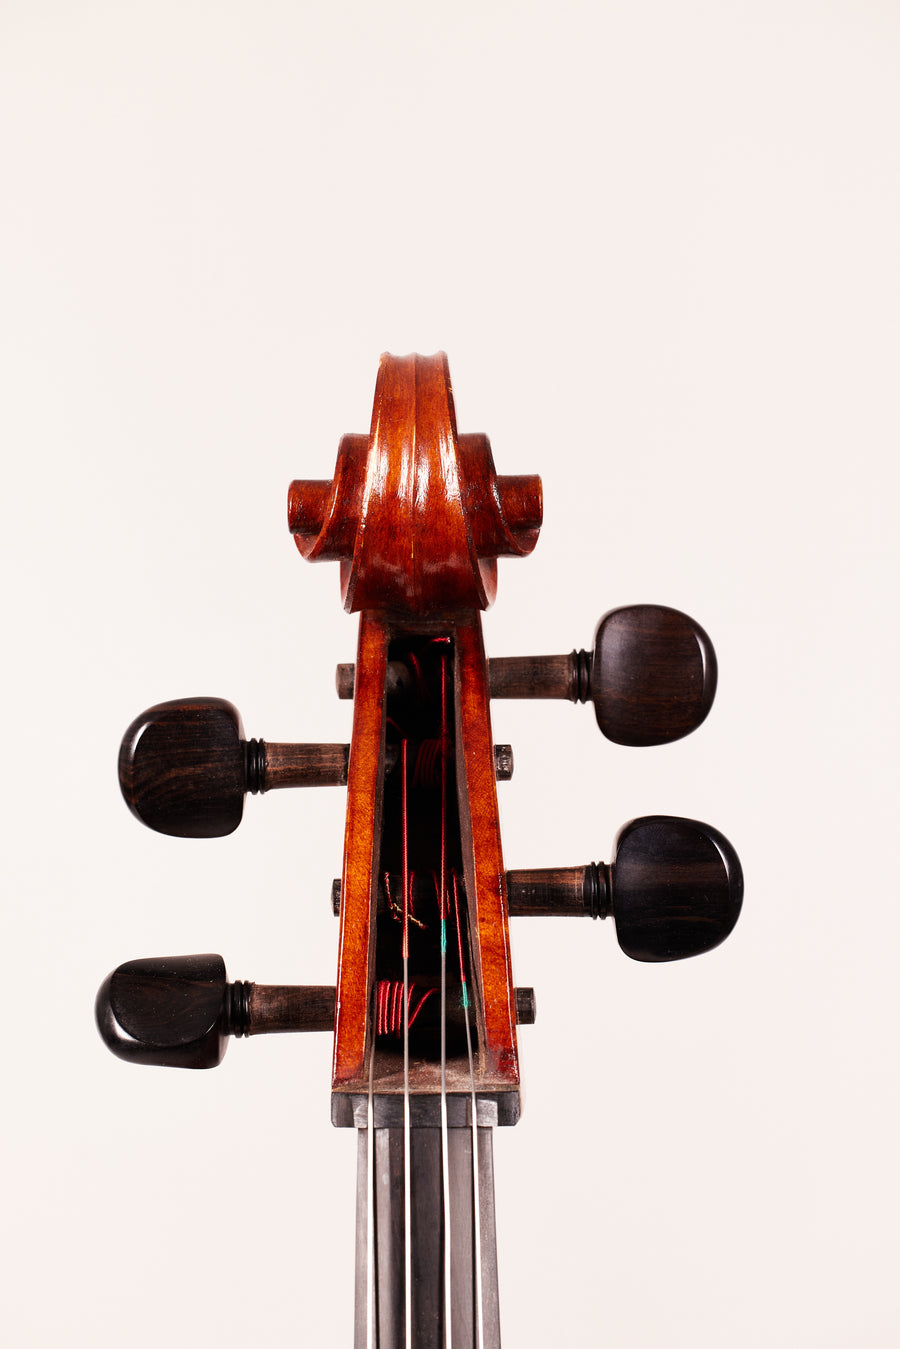 A Cello By Martin Sheridan, 2007